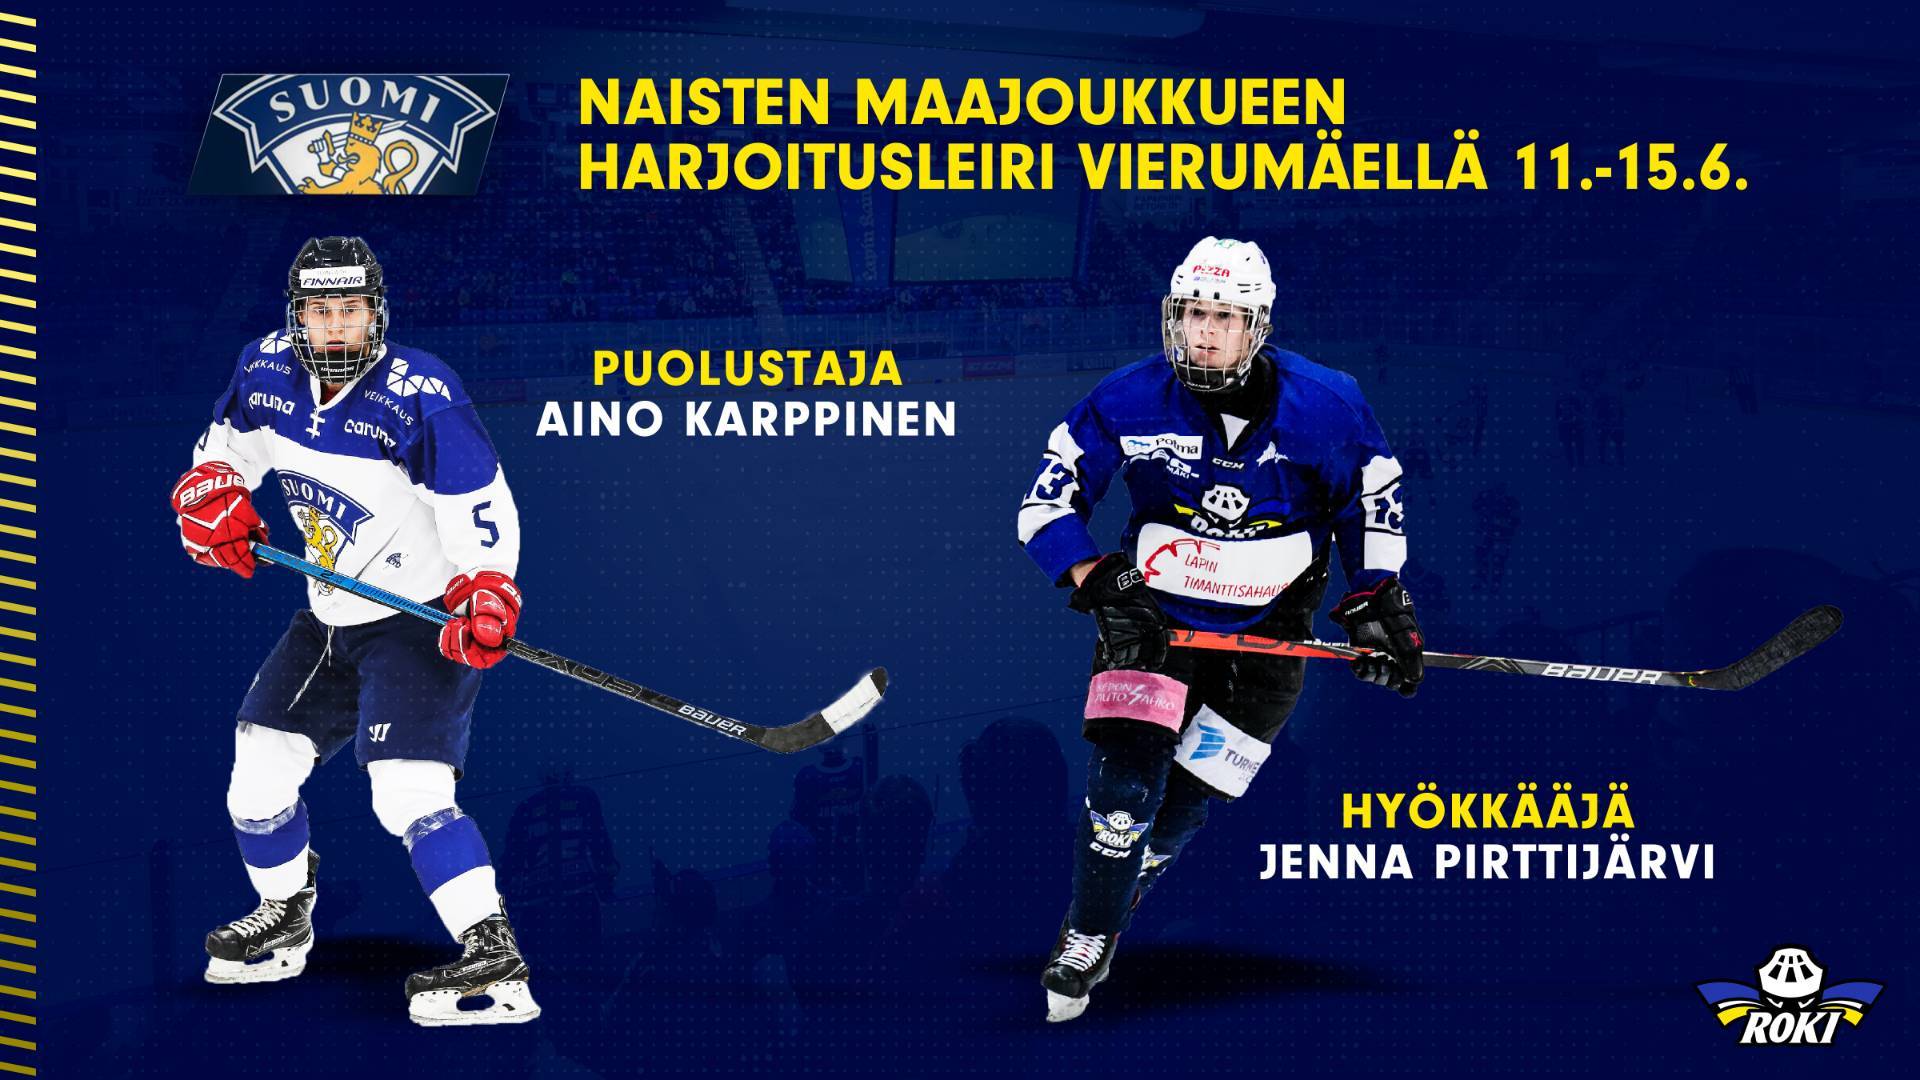 Aino Karppinen ja Jenna Pirttijärvi naisten maajoukkueleirille Vierumäelle